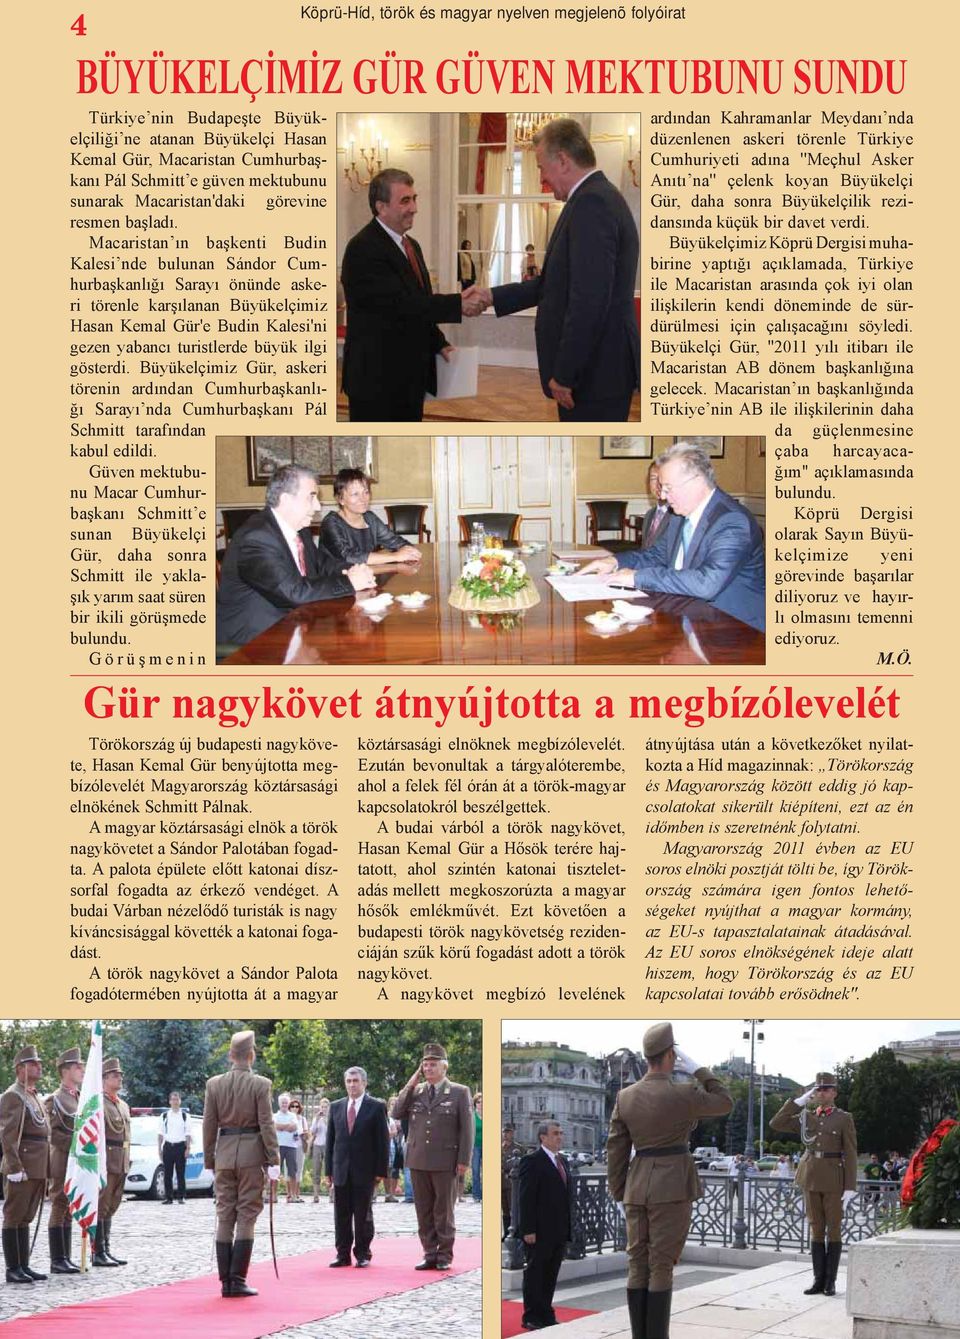 gösterdi. Büyükelçimiz Gür, askeri törenin ardından Cumhurbaşkanlığı Sarayı nda Cumhurbaşkanı Pál Schmitt tarafından kabul edildi.